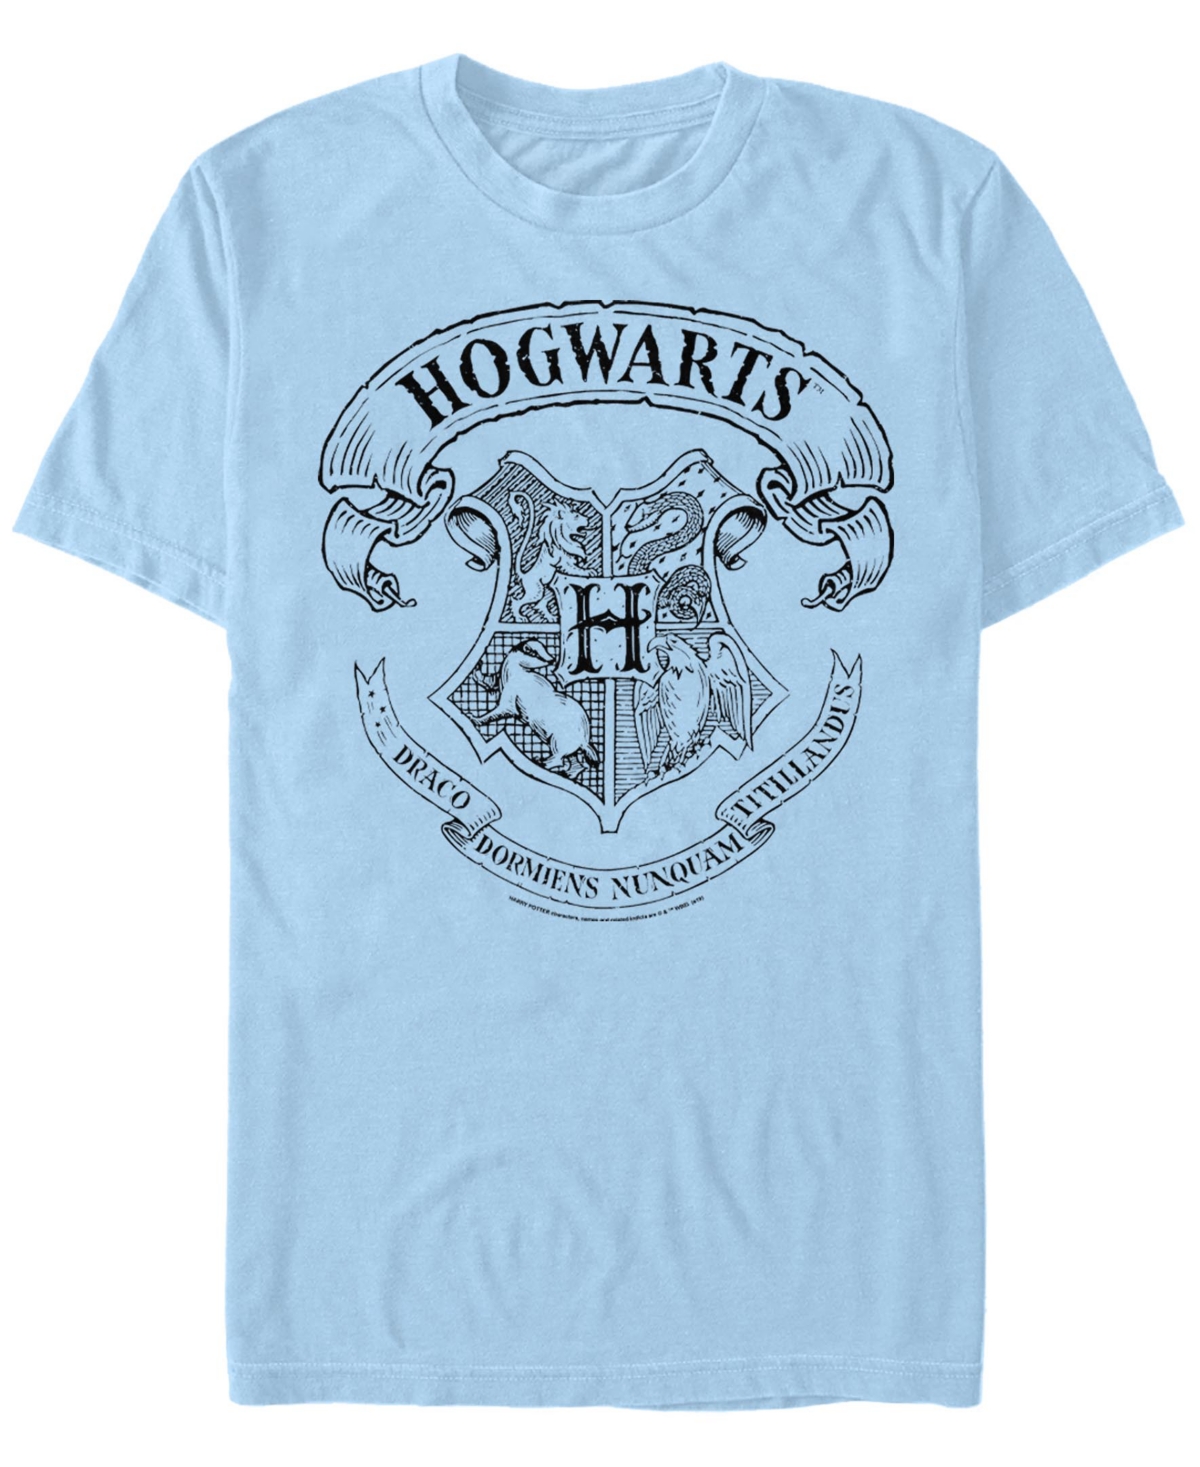 Men's Hogwarts Crest Short Sleeve Crew T-shirt - Light Blue